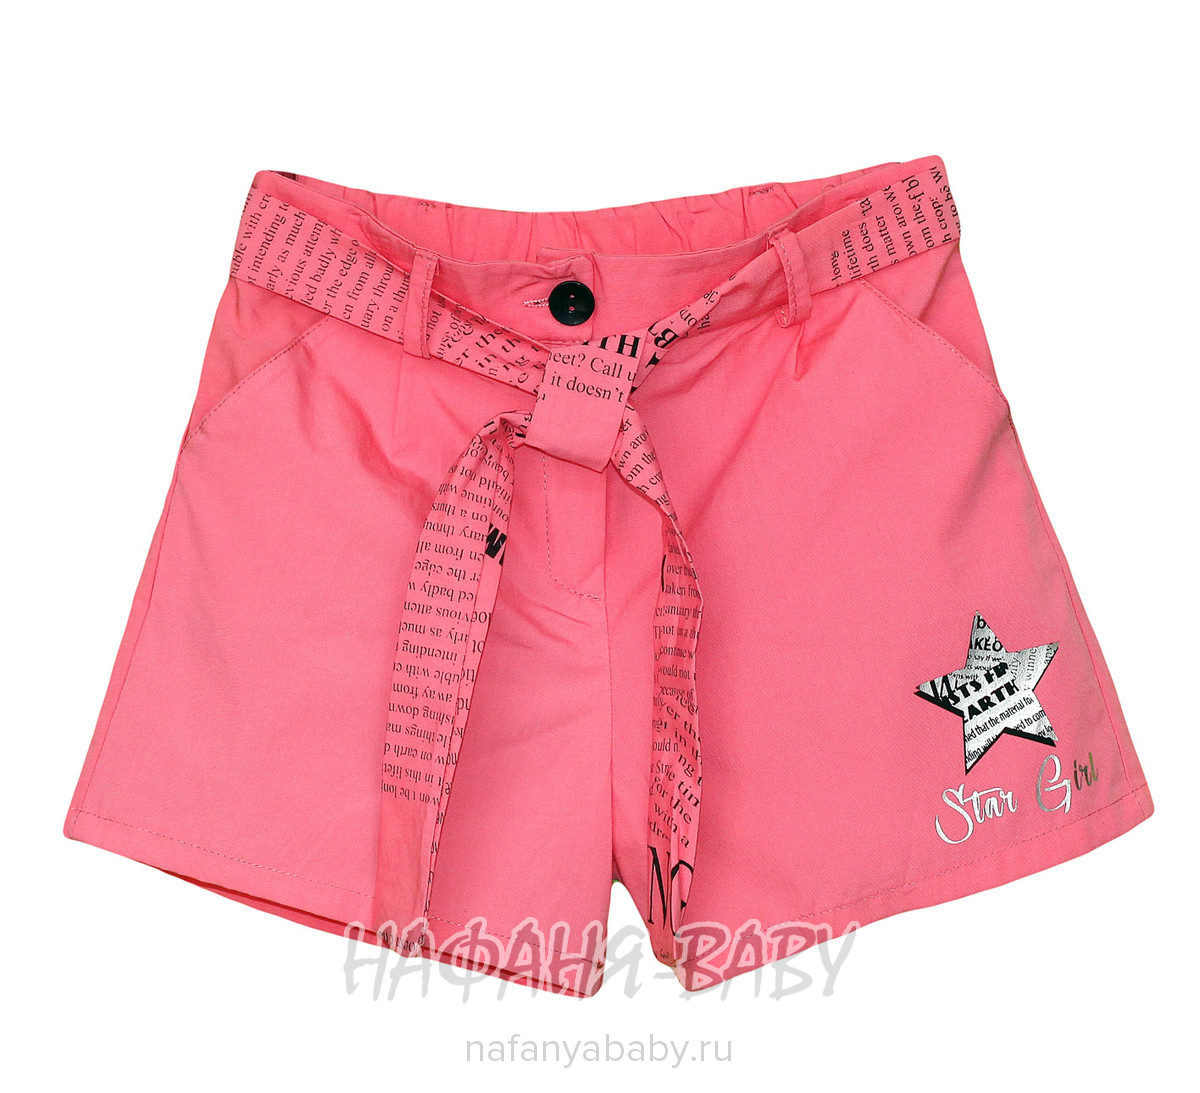 Модные шорты Do-Minik арт: 1905, 10-15 лет, 5-9 лет, цвет розовый, оптом Турция